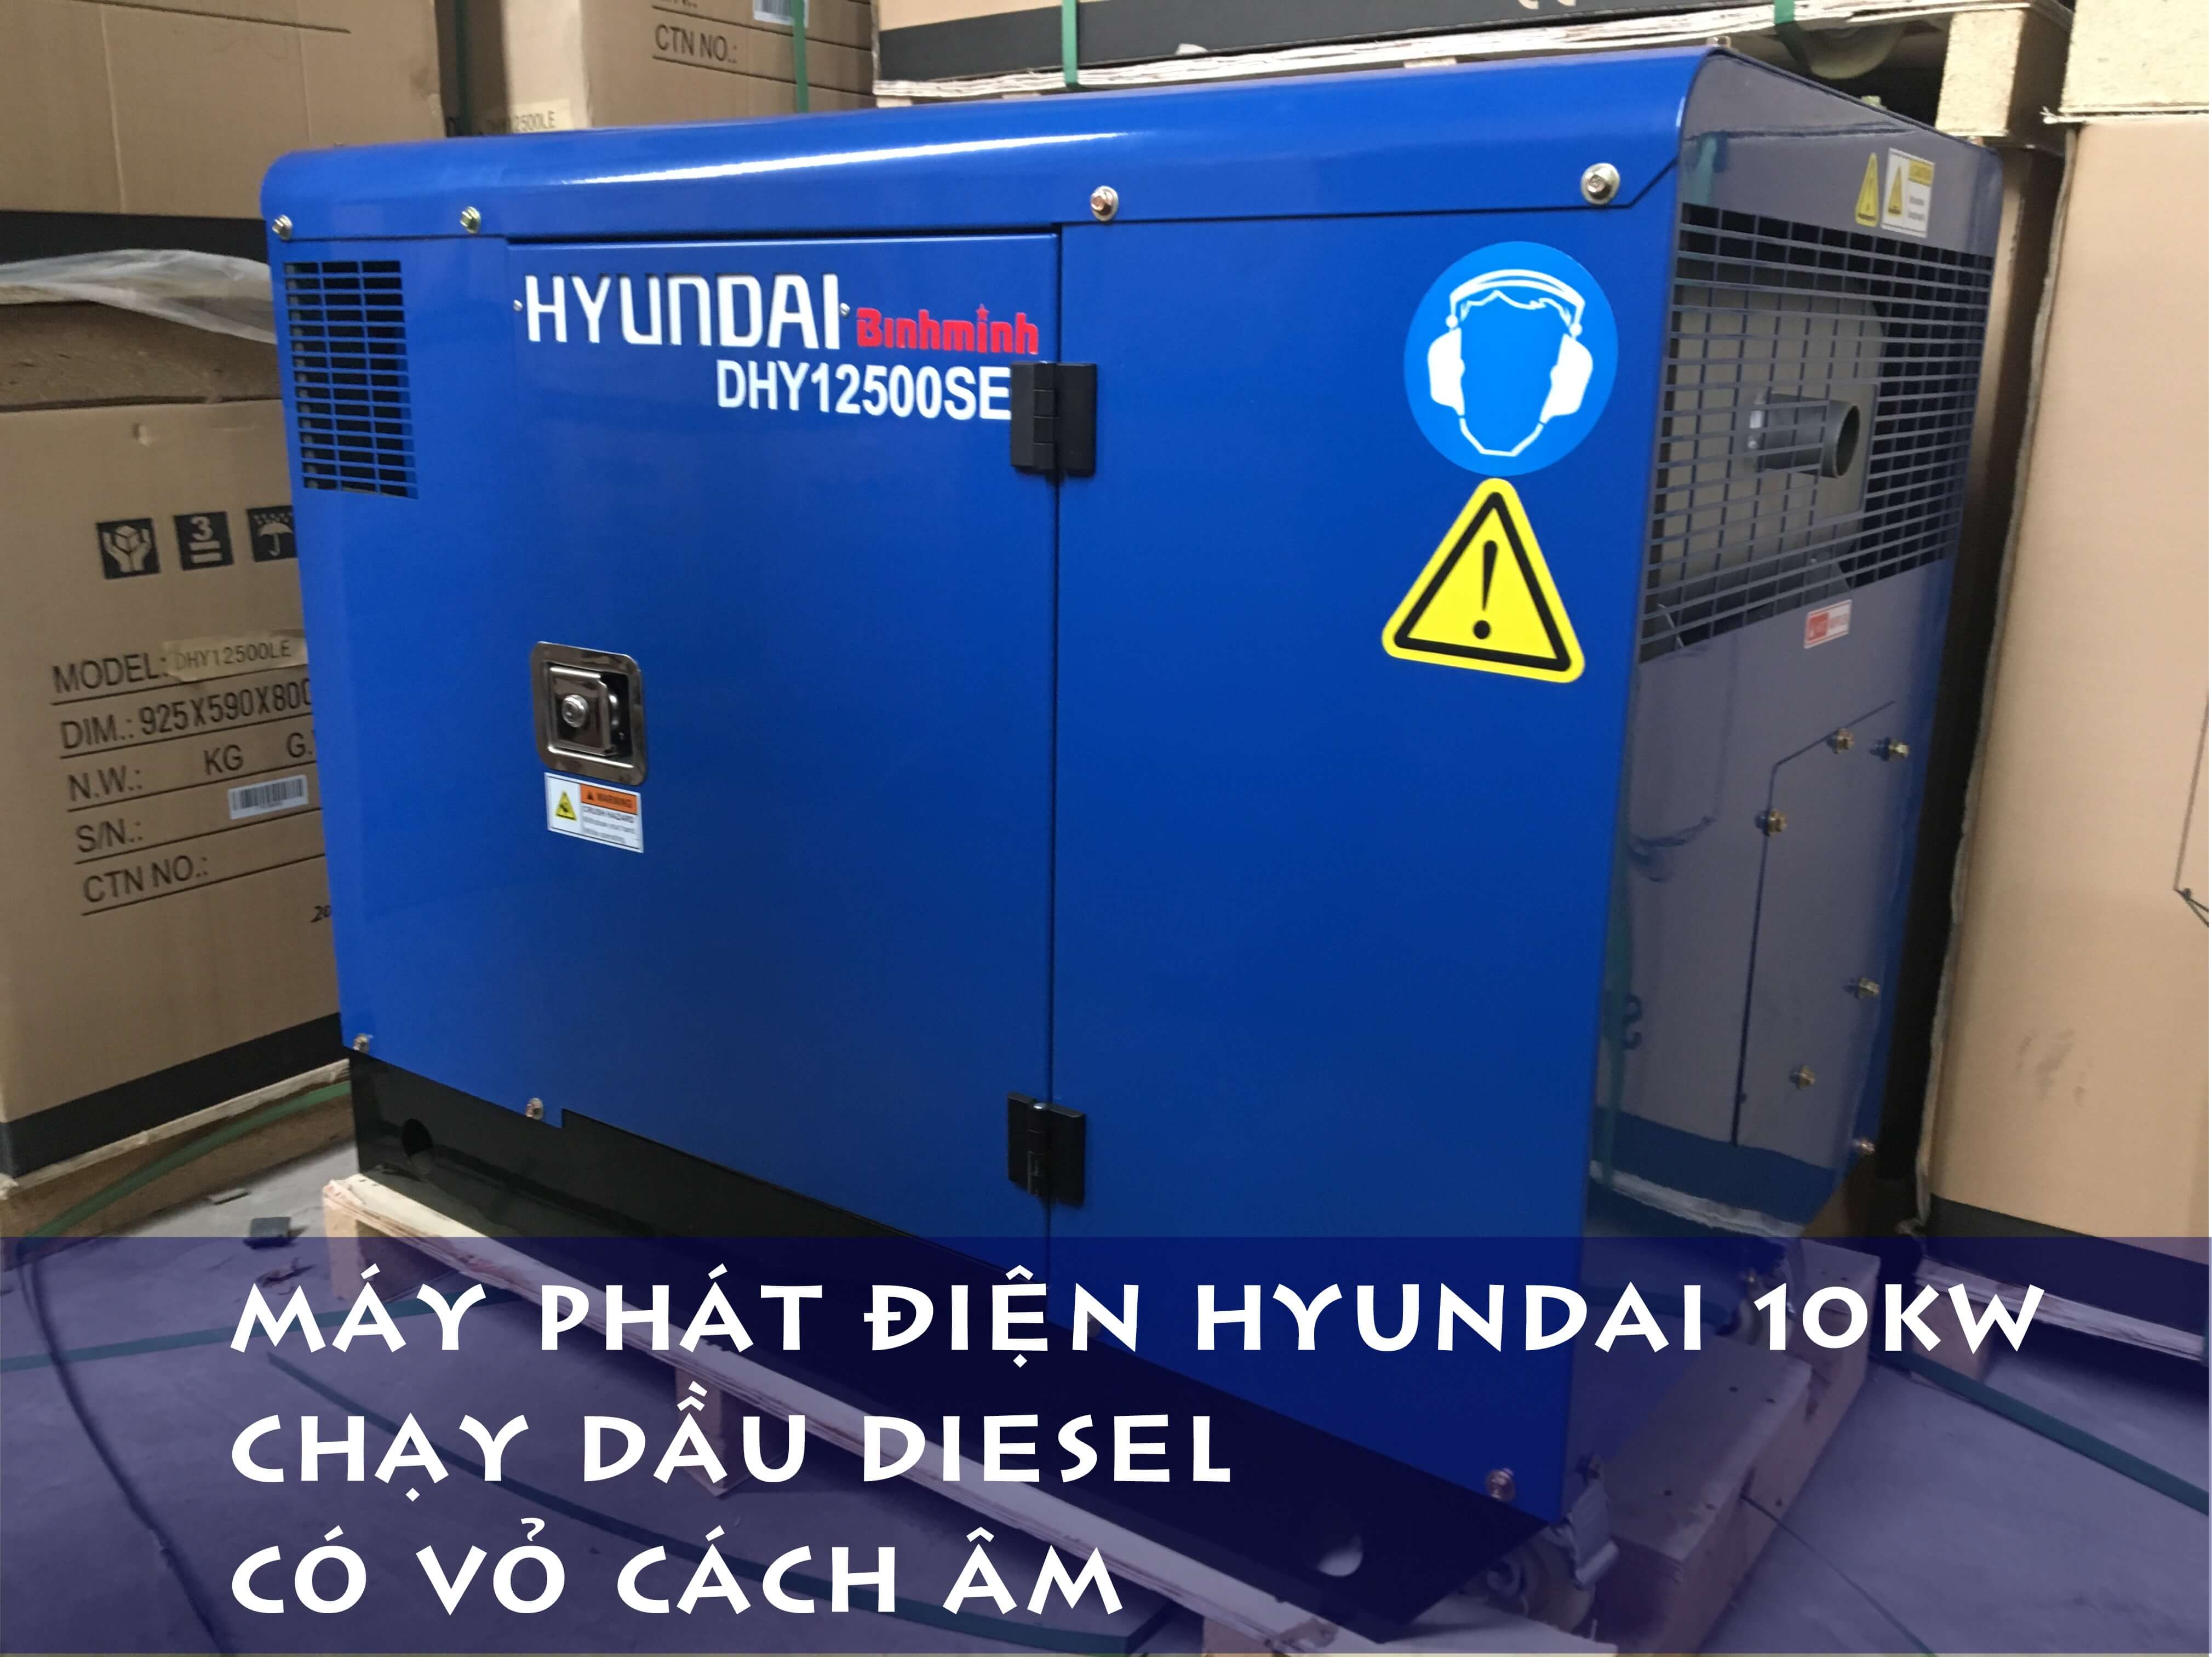 Máy phát điện Hyundai 10kw lắp đặt tại vườn nho tỉnh Ninh Thuận